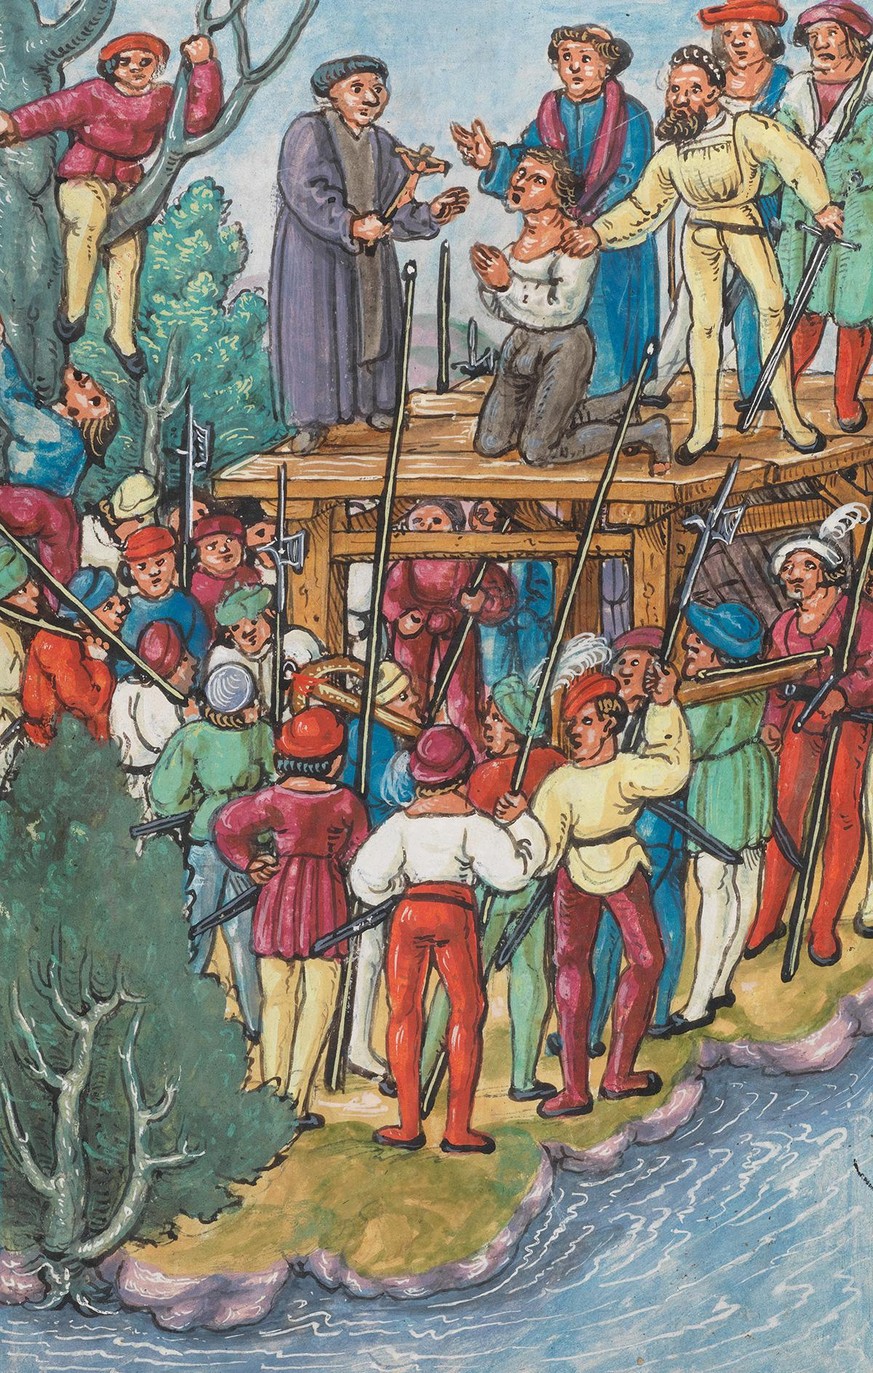 Hinrichtung von Hans Waldmann in der Luzerner Chronik von Diebold Schilling, 1513.
https://www.e-codices.ch/de/kol/S0023-2/299/0/Sequence-1291